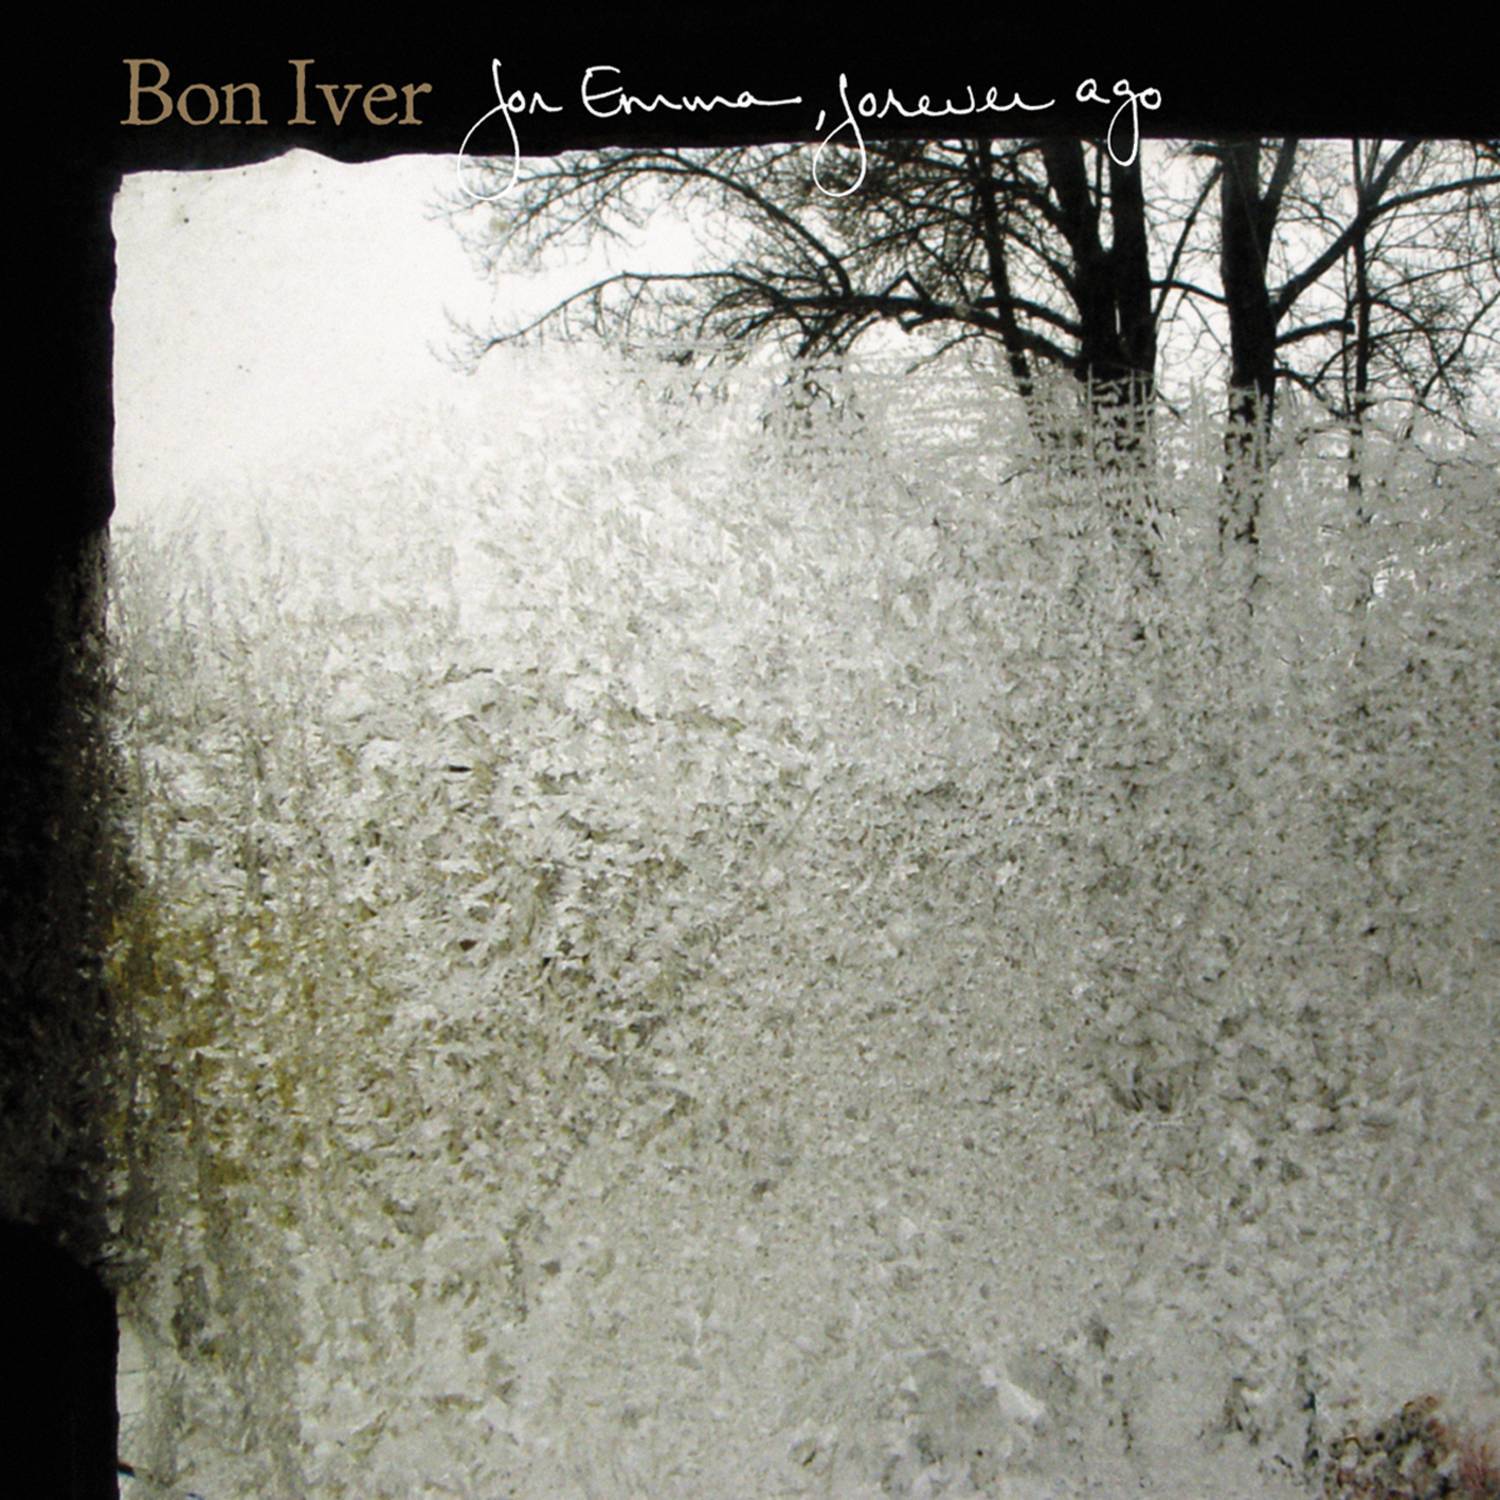 Bon Iver - For Emma 献给艾玛